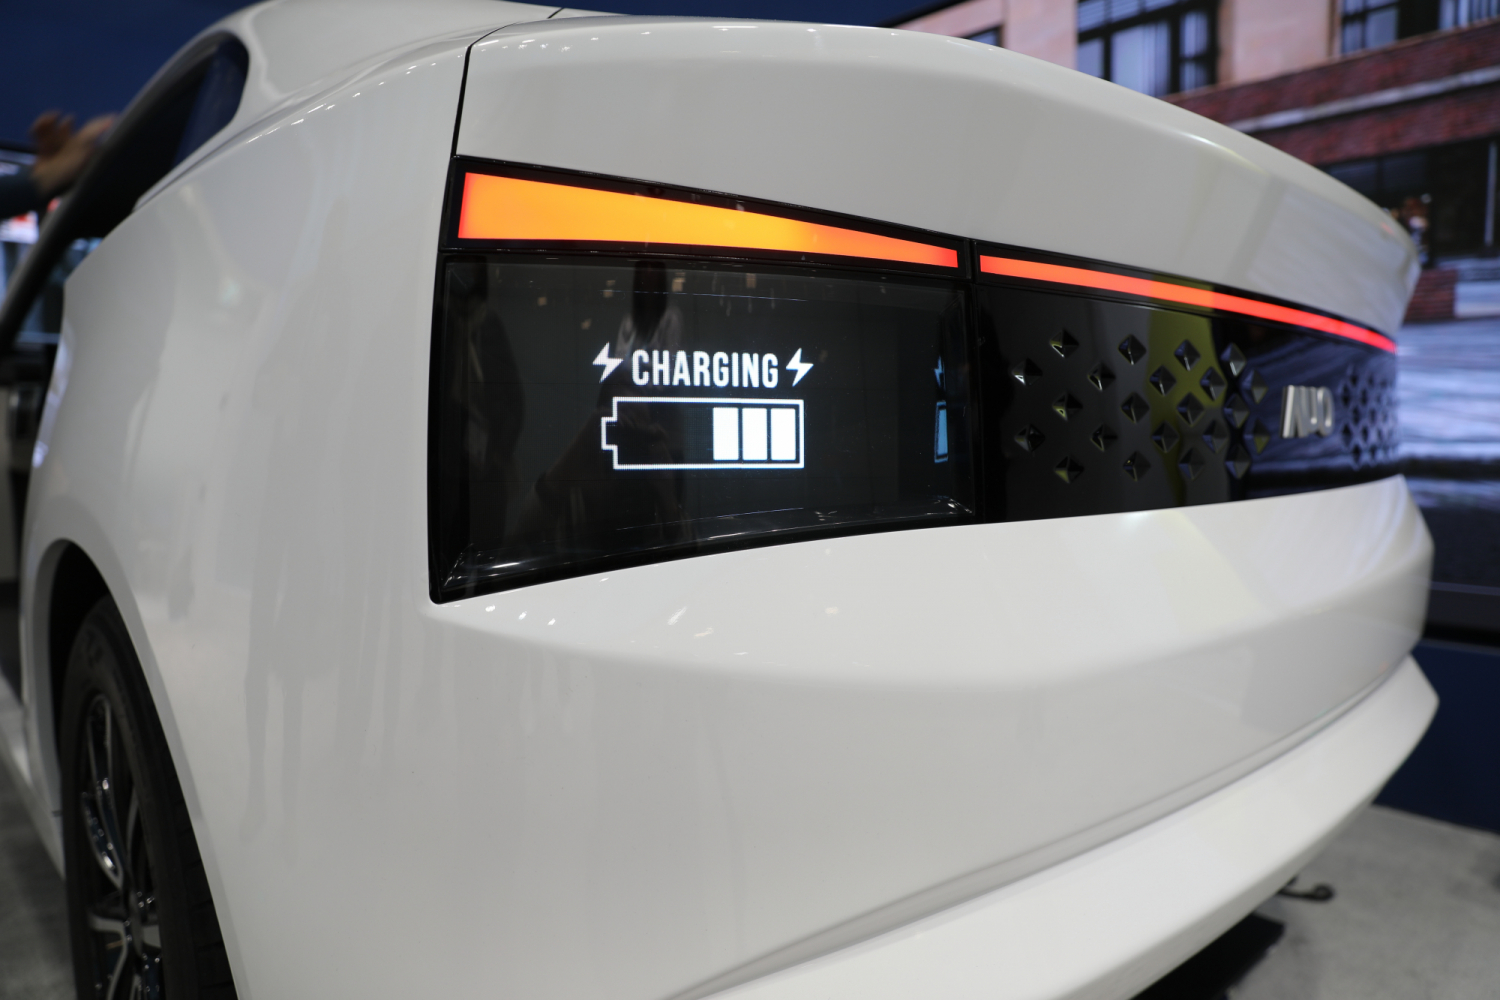 「矩阵式互动尾灯」符合汽车AECQ法规，提供高亮度和对比度，保障驾驶安全，并支援RGB显示应用以呈现更精准的视觉传递。